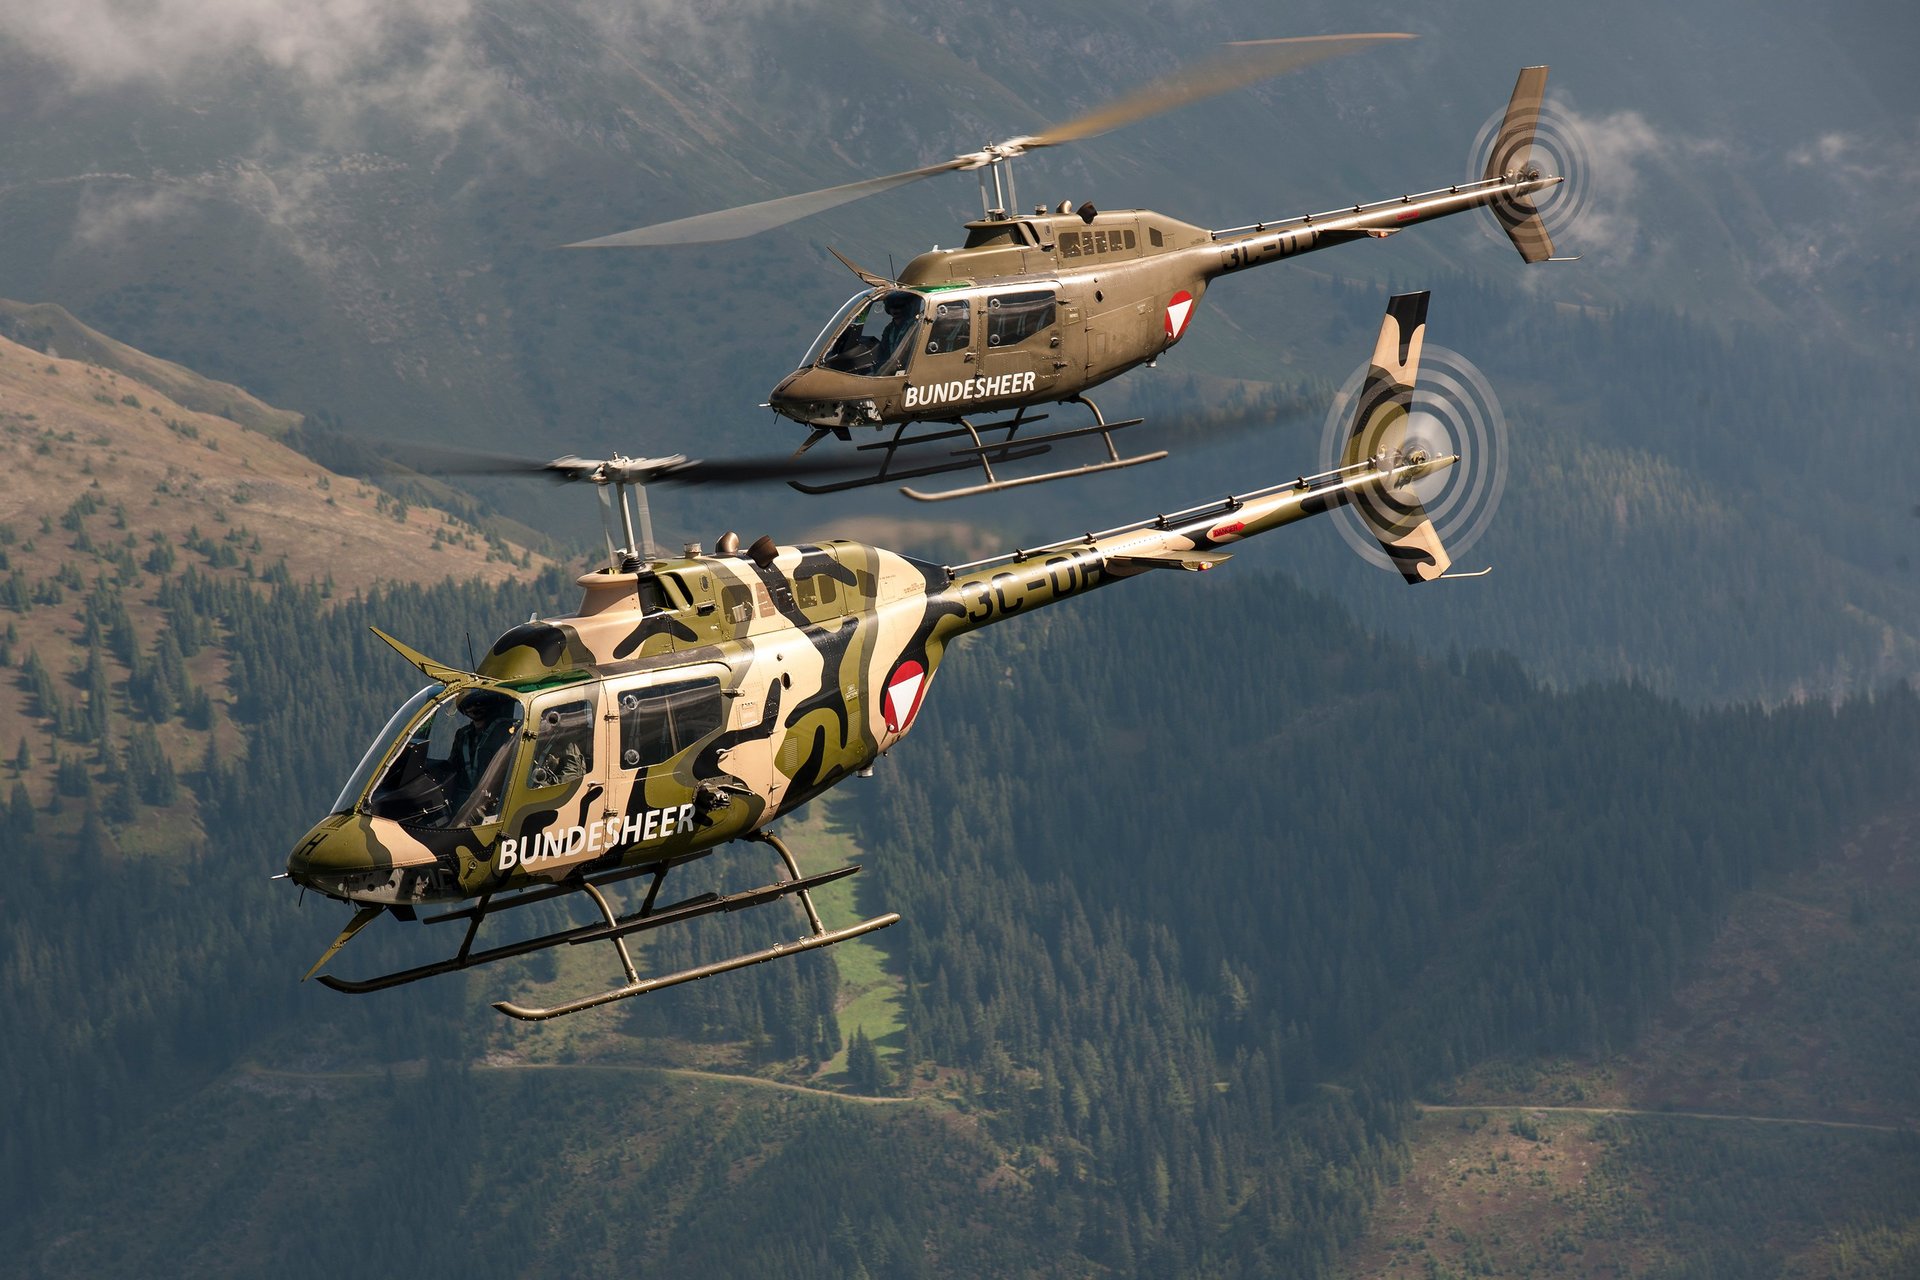 Zwei Bell OH-58 "Kiowa" im Flug, einer mit Speziallackierung.